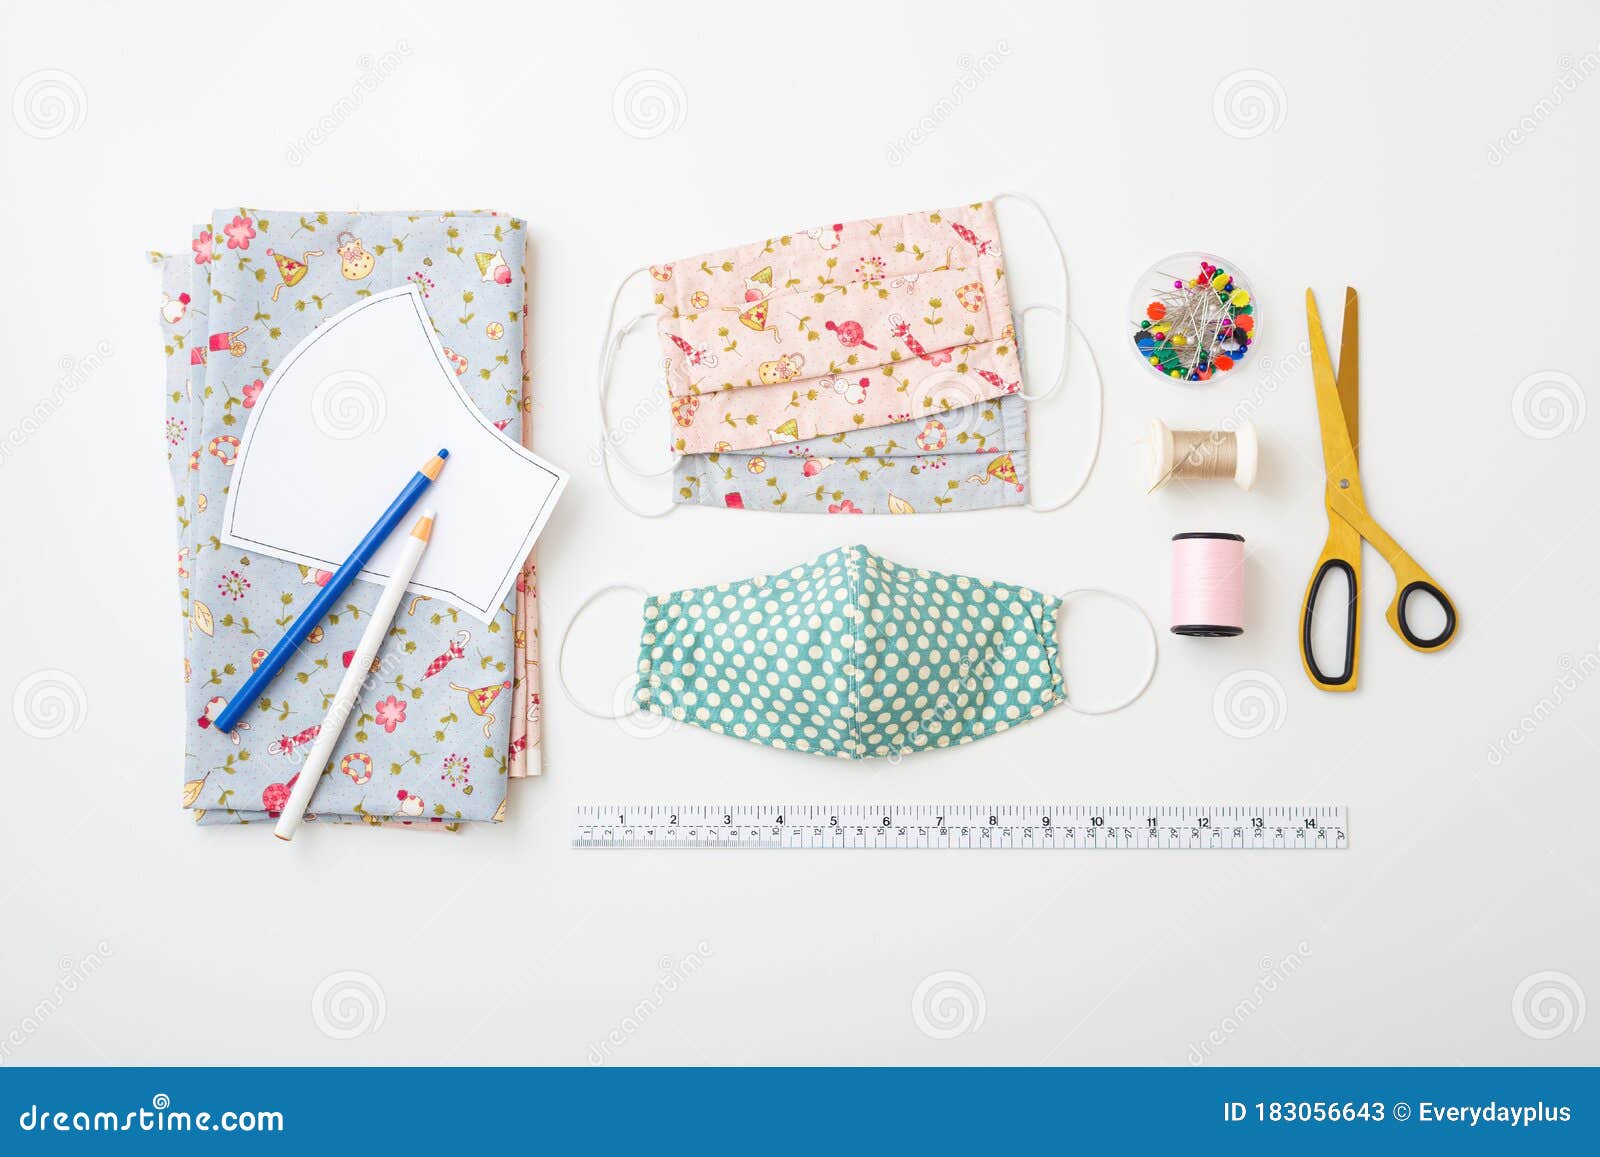 Travel Sewing Kit PDF Sewing Pattern 